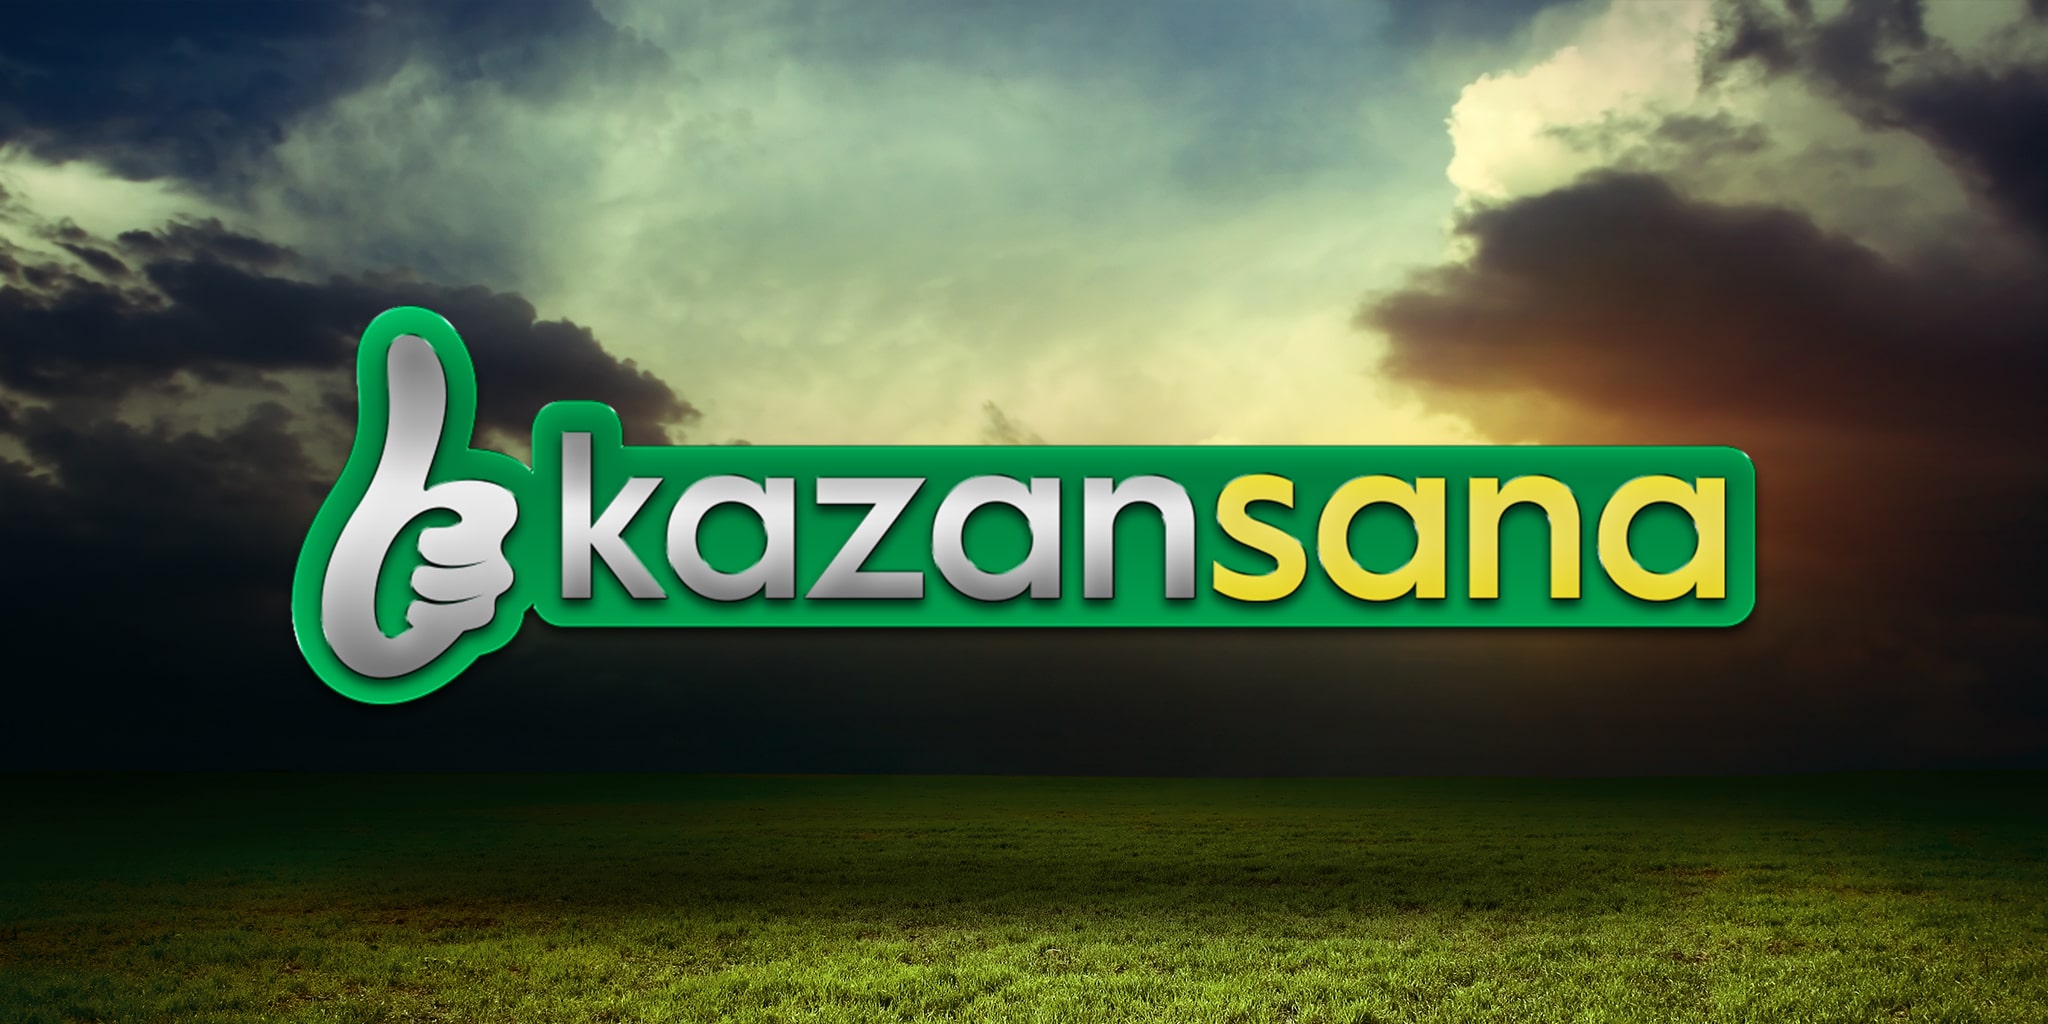 Kazansana